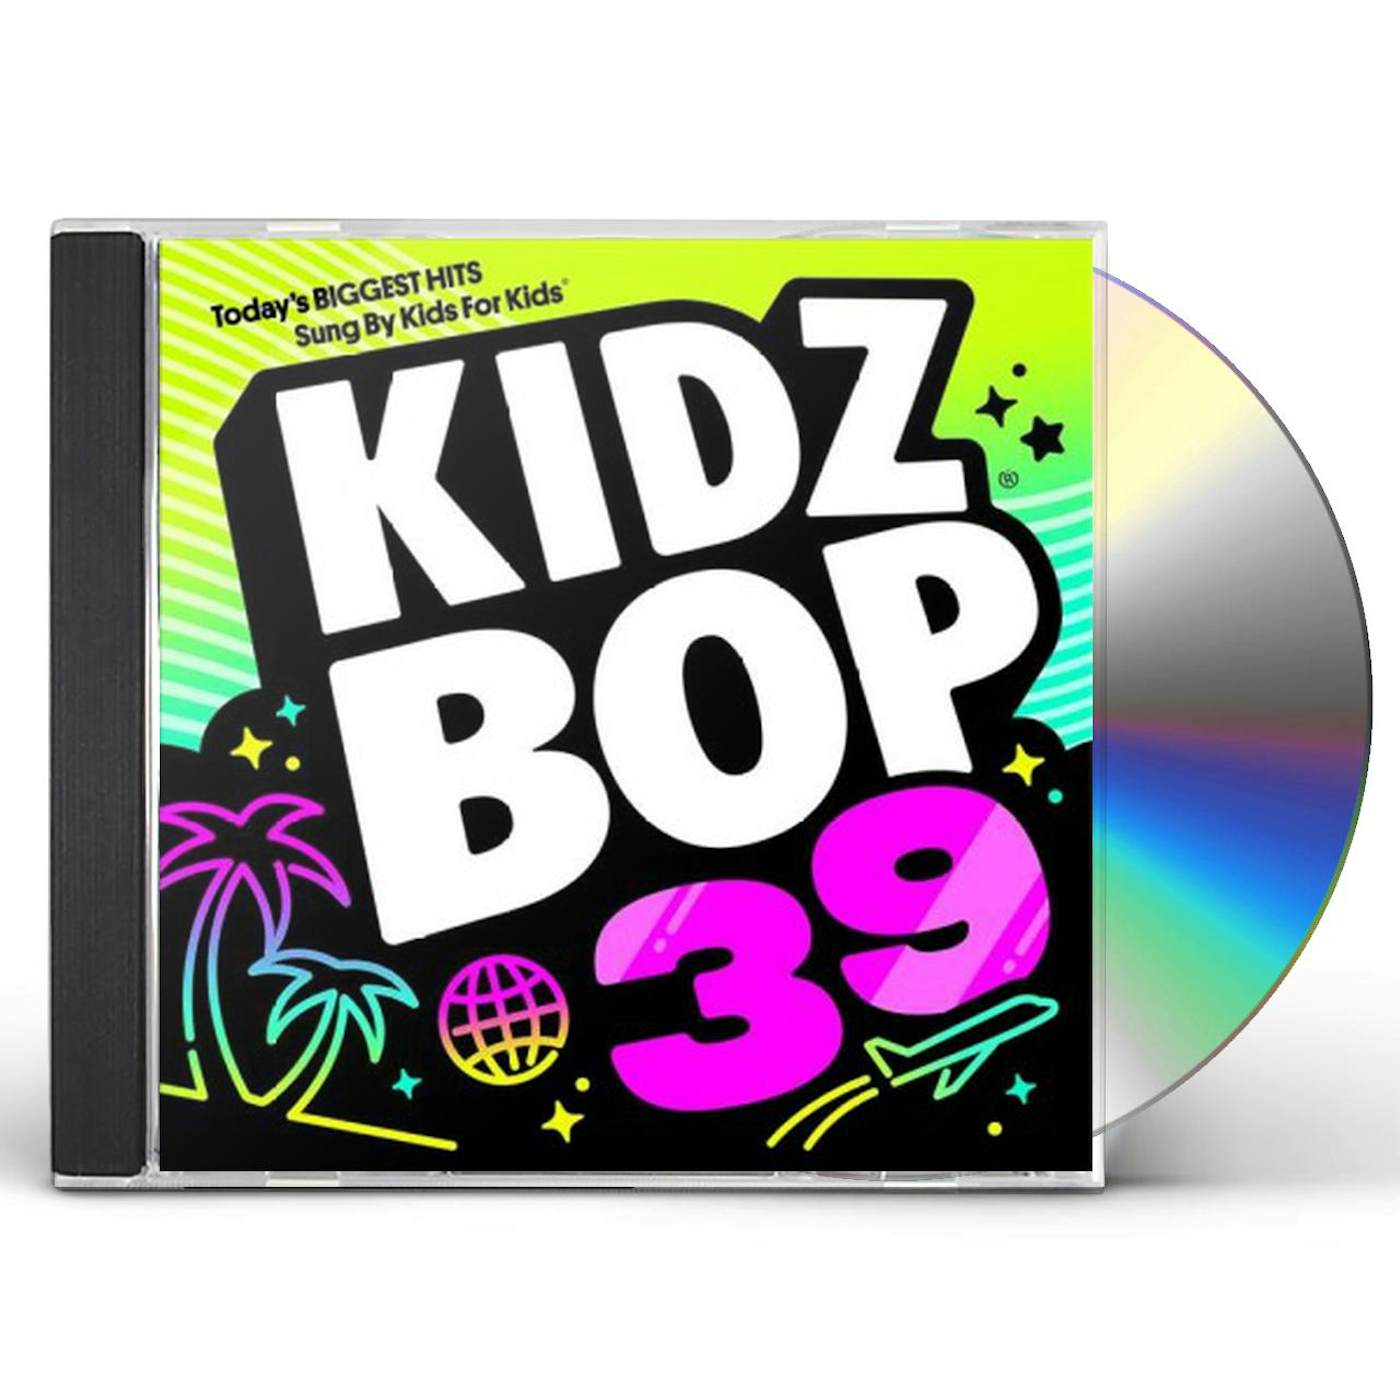 KIDZ BOP 39 CD